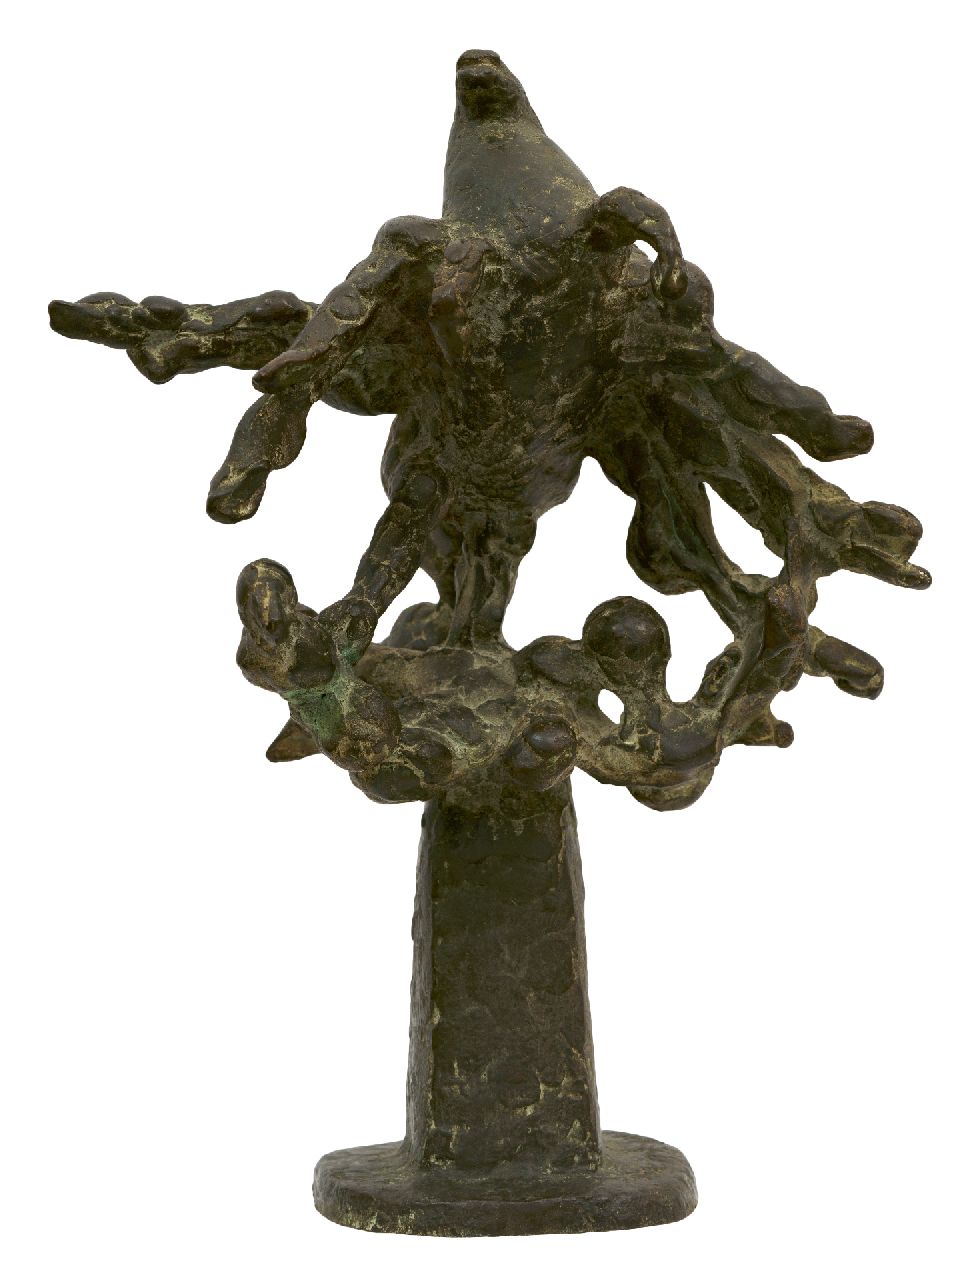 Jonk N.  | Nicolaas 'Nic' Jonk | Beelden en objecten te koop aangeboden | Belerophon, brons 36,6 x 27,0 cm, gesigneerd op basis en gedateerd 1991